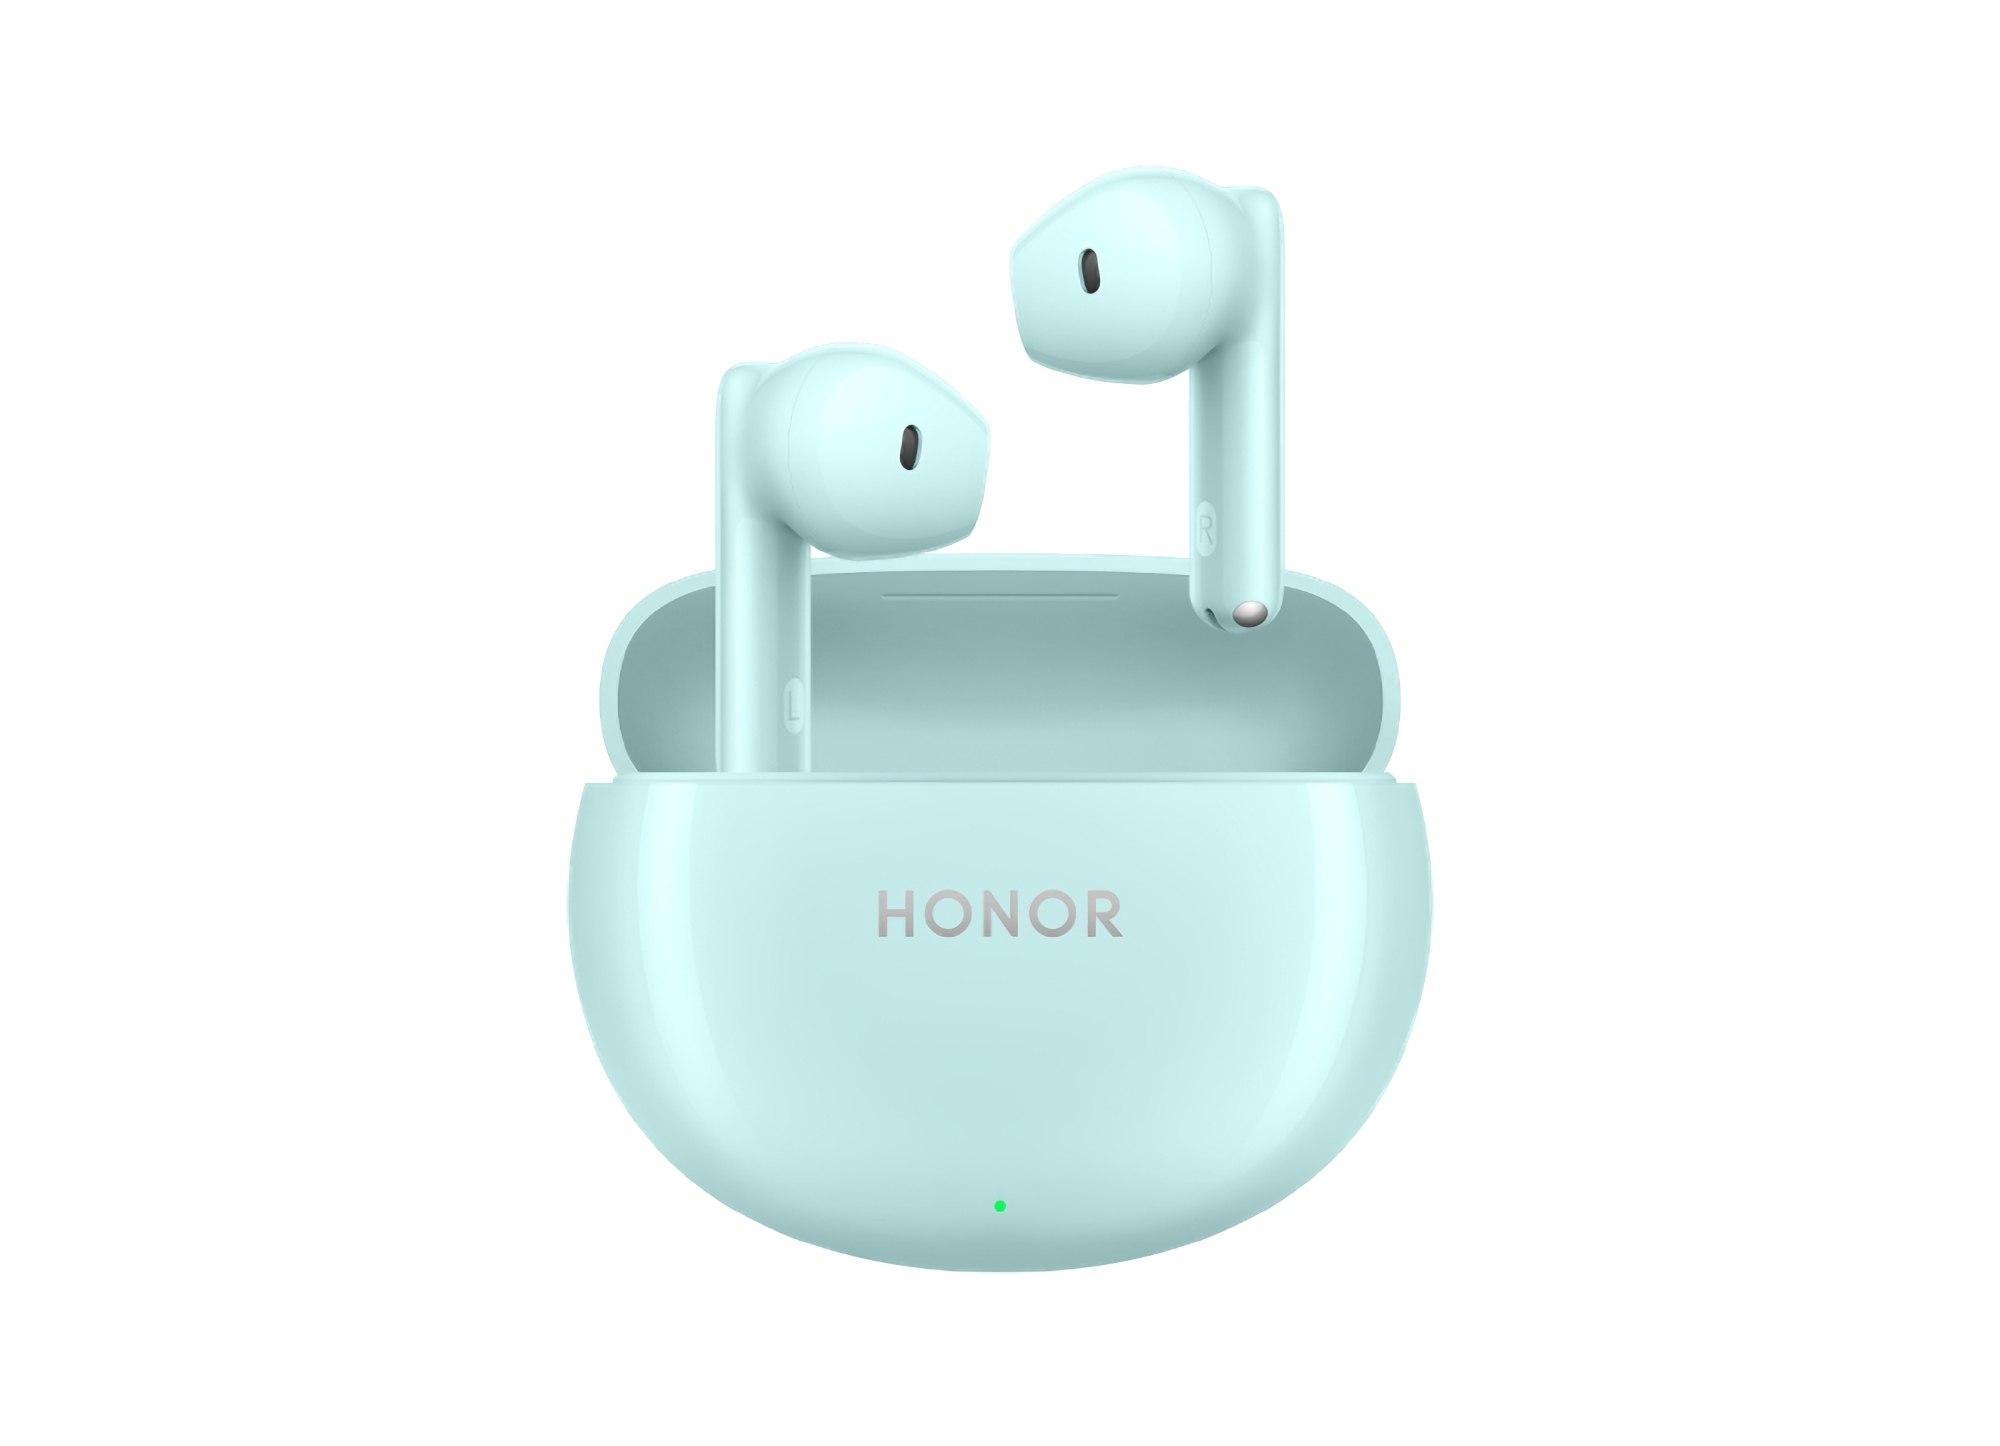 Ecouteurs Honor X7 : conducteurs de 10 mm et jusqu'à 40 heures d'autonomie pour 40 dollars